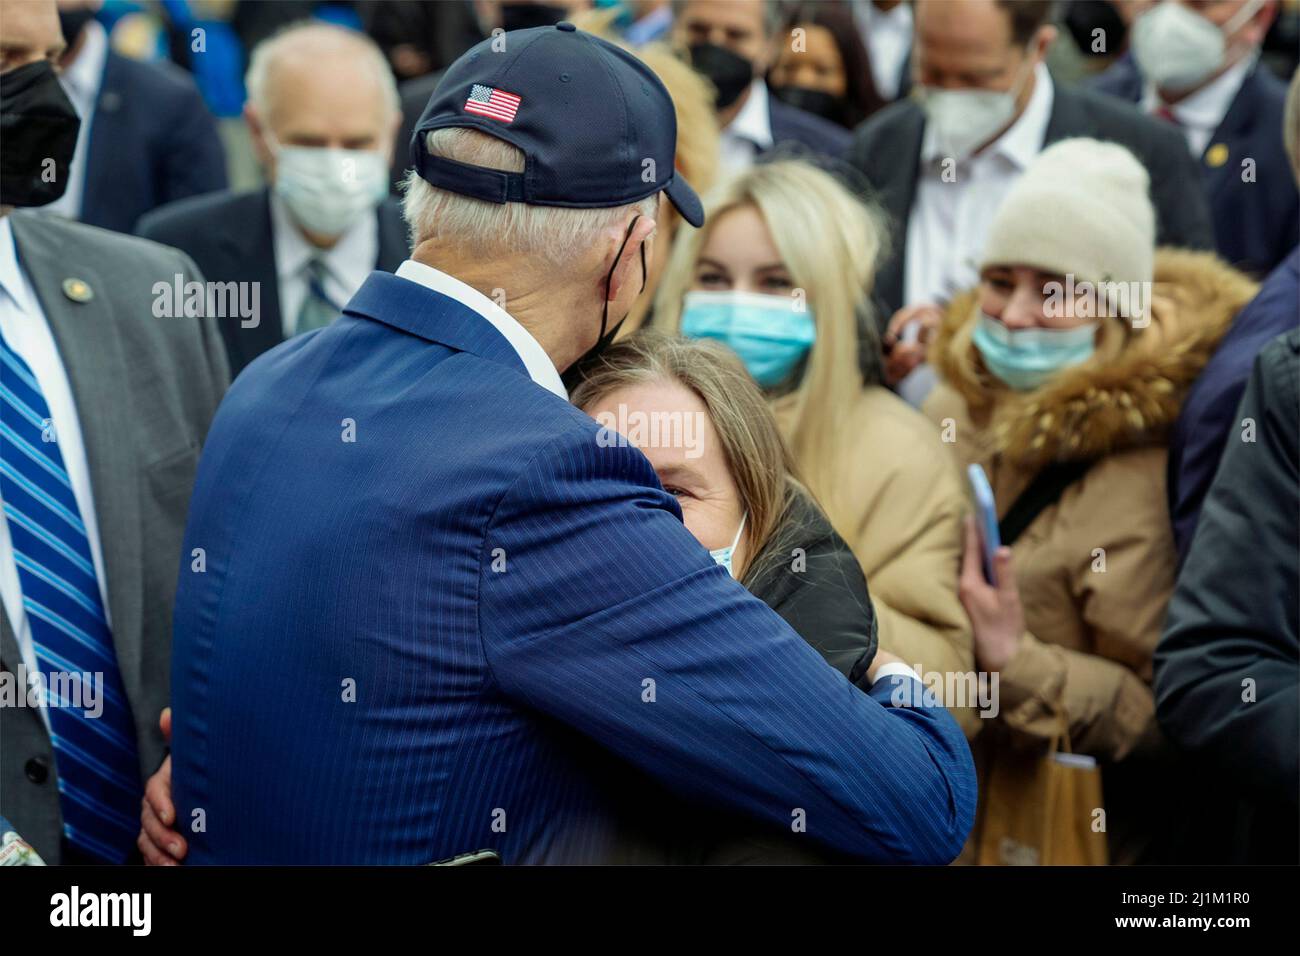 Varsovia, Polonia. 26th Mar, 2022. El presidente de los Estados Unidos, Joe Biden, abraza a un refugiado ucraniano huyendo de la invasión rusa en el estadio Narodowy de PGE, el 26 de marzo de 2022 en Varsovia, Polonia. Crédito: Adam Schultz/Casa Blanca Foto/Alamy Live News Foto de stock